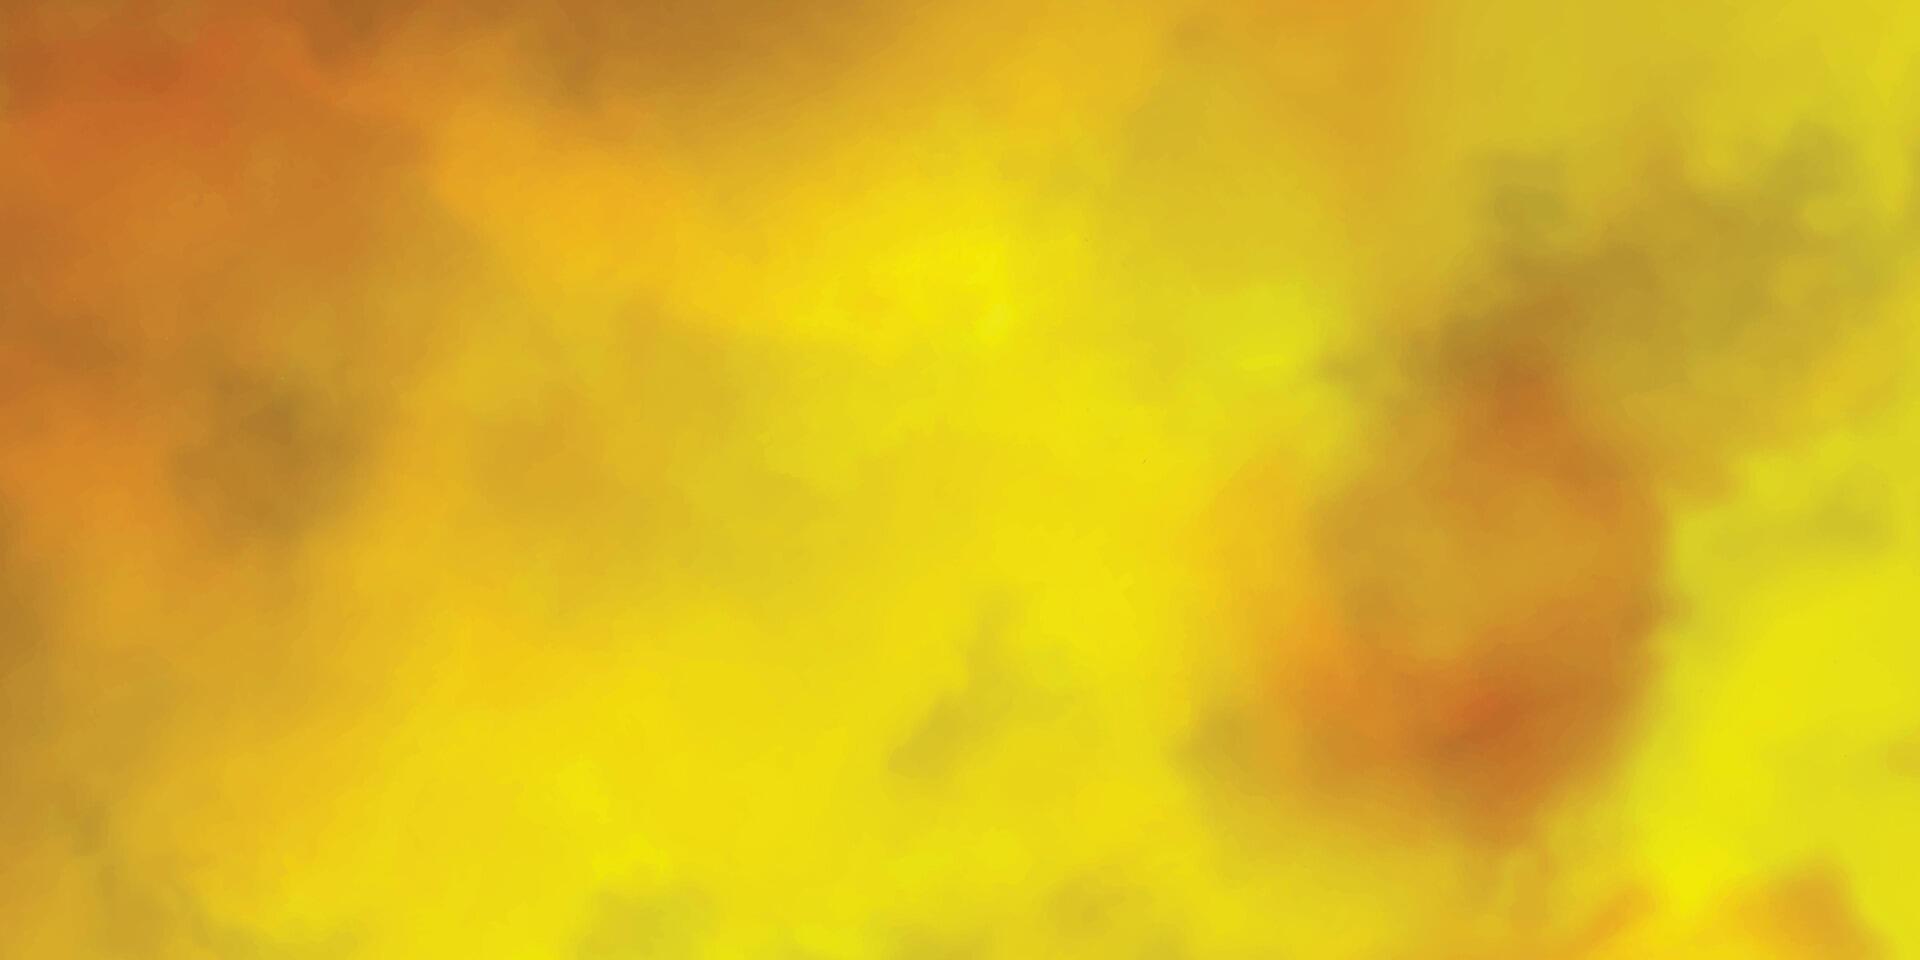 achtergrond met geel en rood kleuren. waterverf rood oranje geschilderd achtergrond. oranje zon wolken achtergrond. rood en oranje waterverf achtergrond. kleurrijk grunge textuur. vector